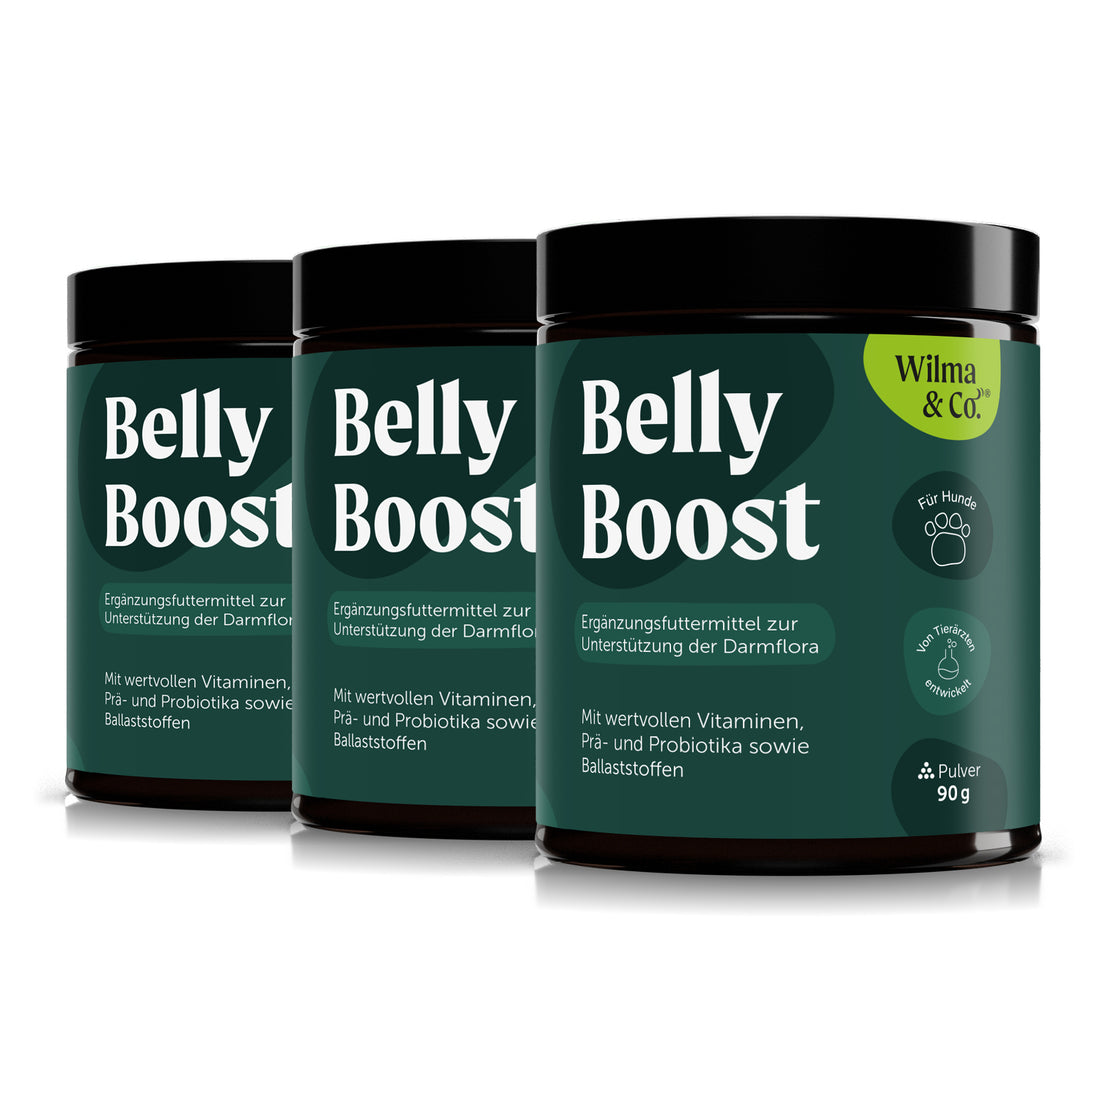 Belly Boost | Pulver für eine gesunde Verdauung